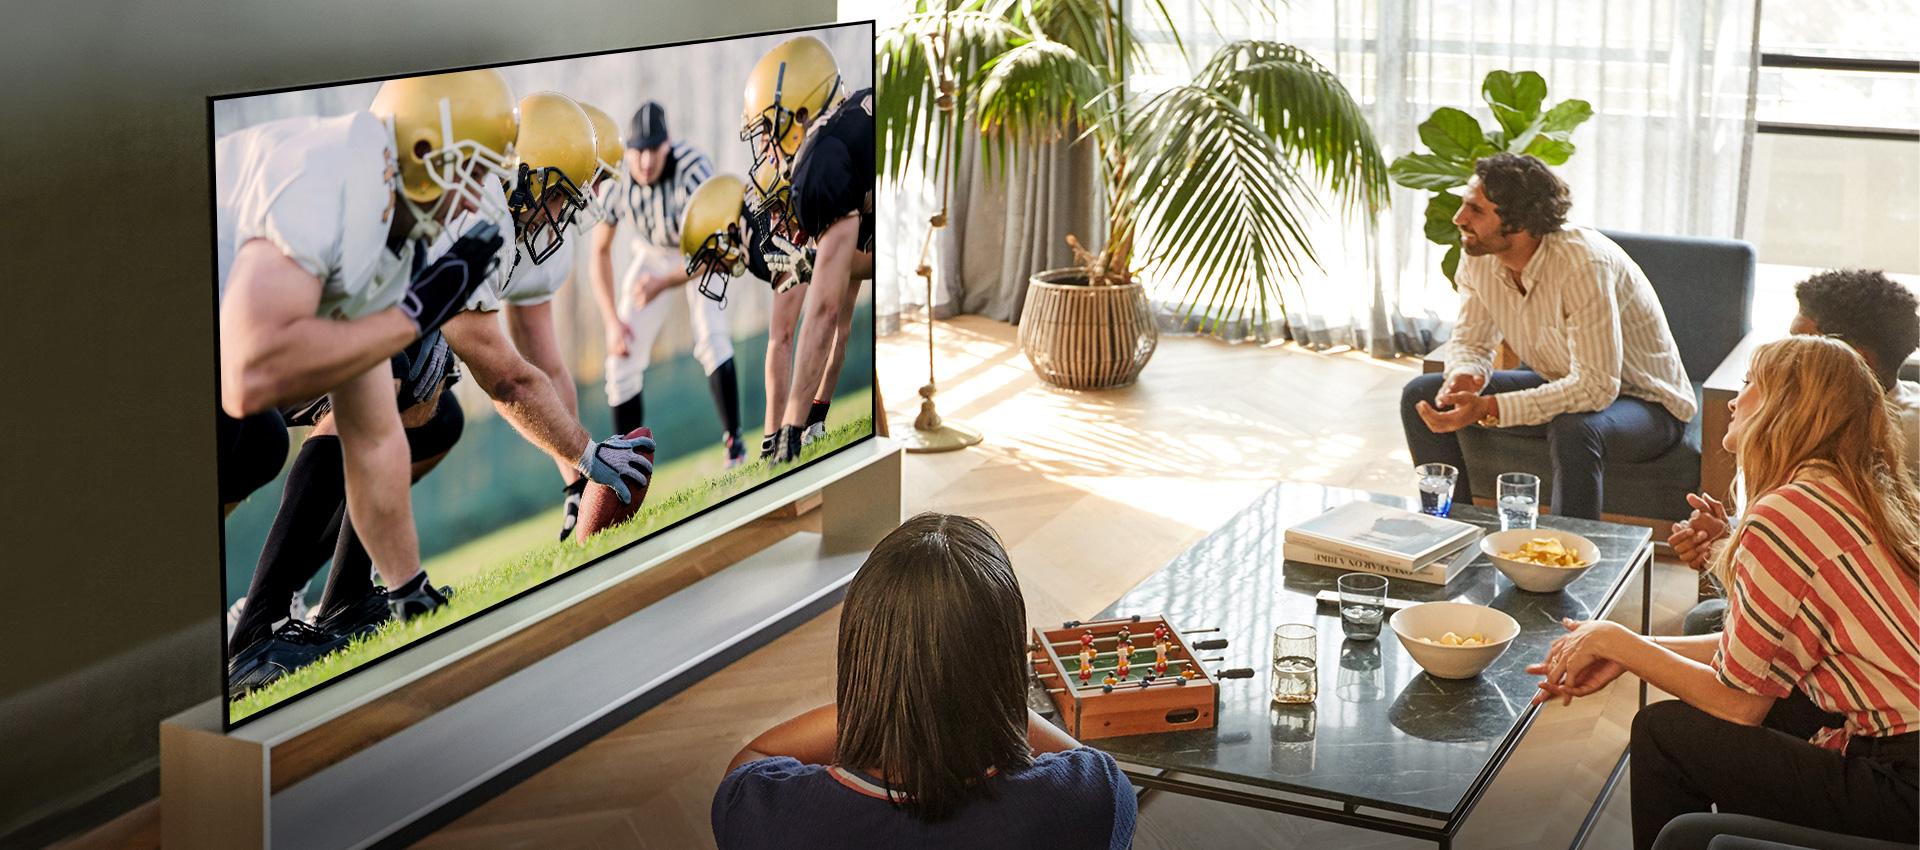 Grupa znajomych w salonie ogląda mecz piłki nożnej na telewizorze o szerokim kącie widzenia